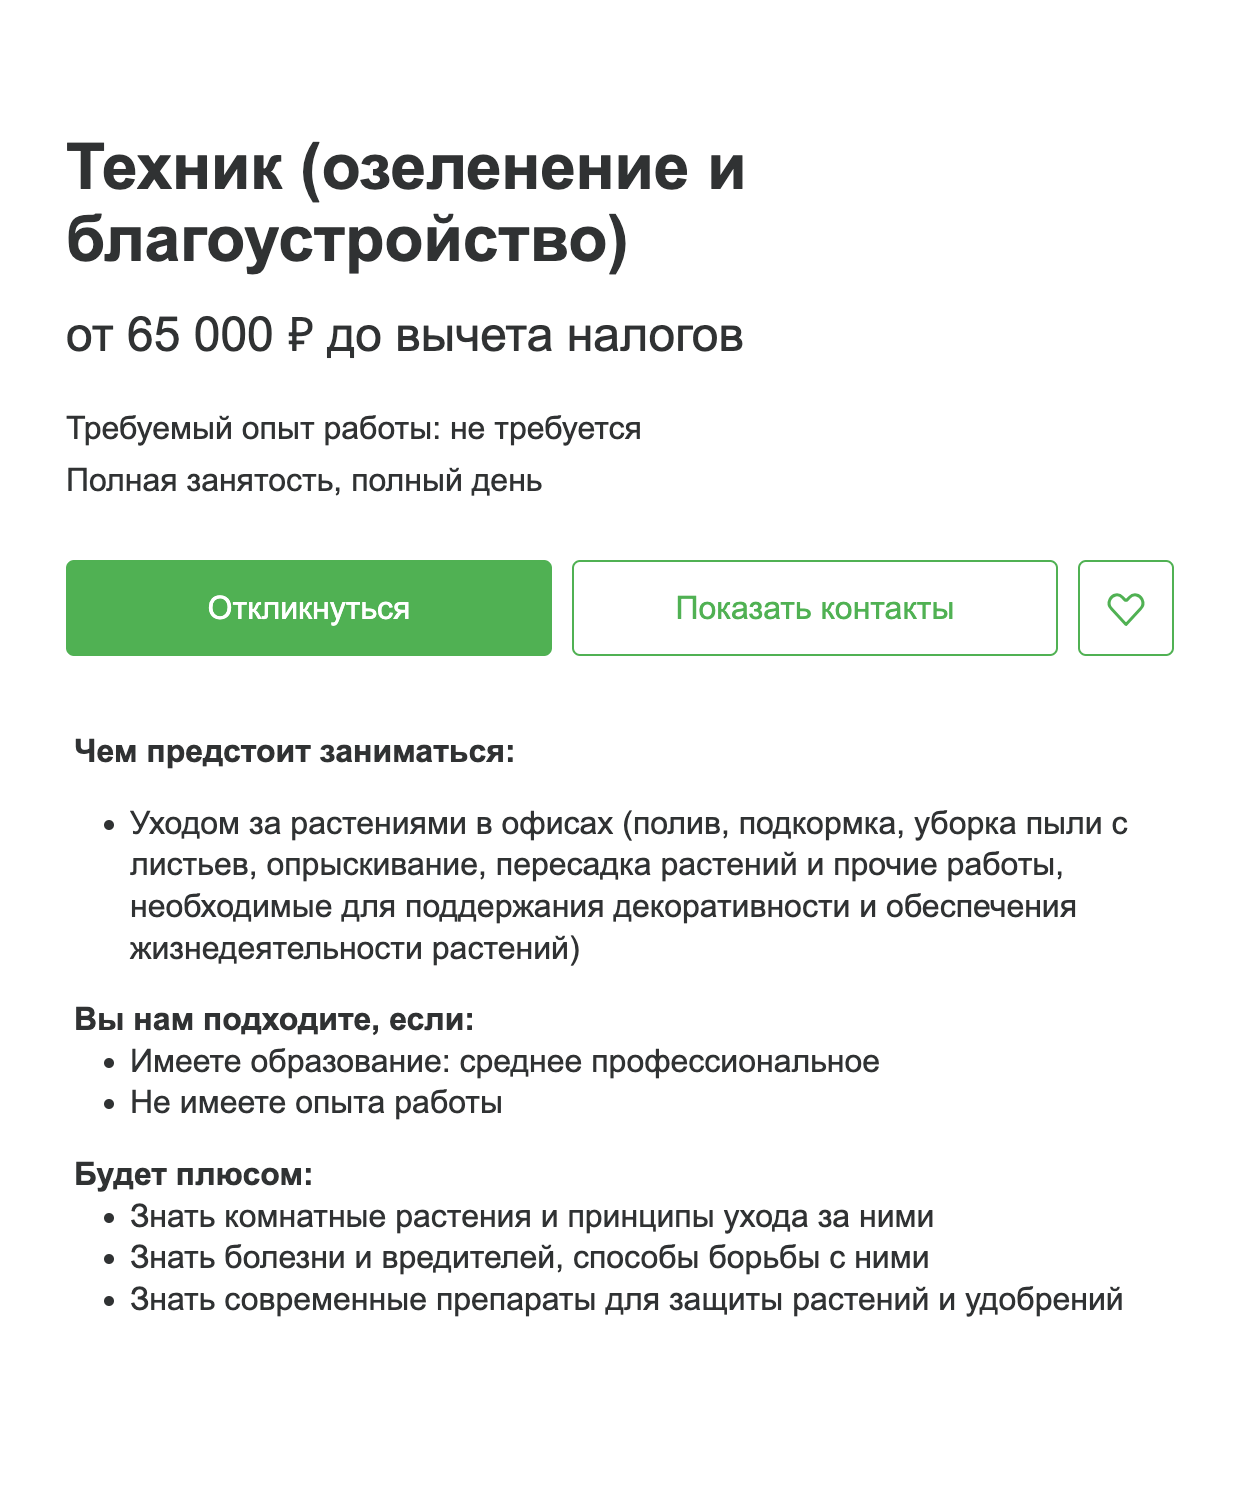 Требования для техника по благоустройству и озеленению в аэропорту Домодедово. Иcточник: hh.ru